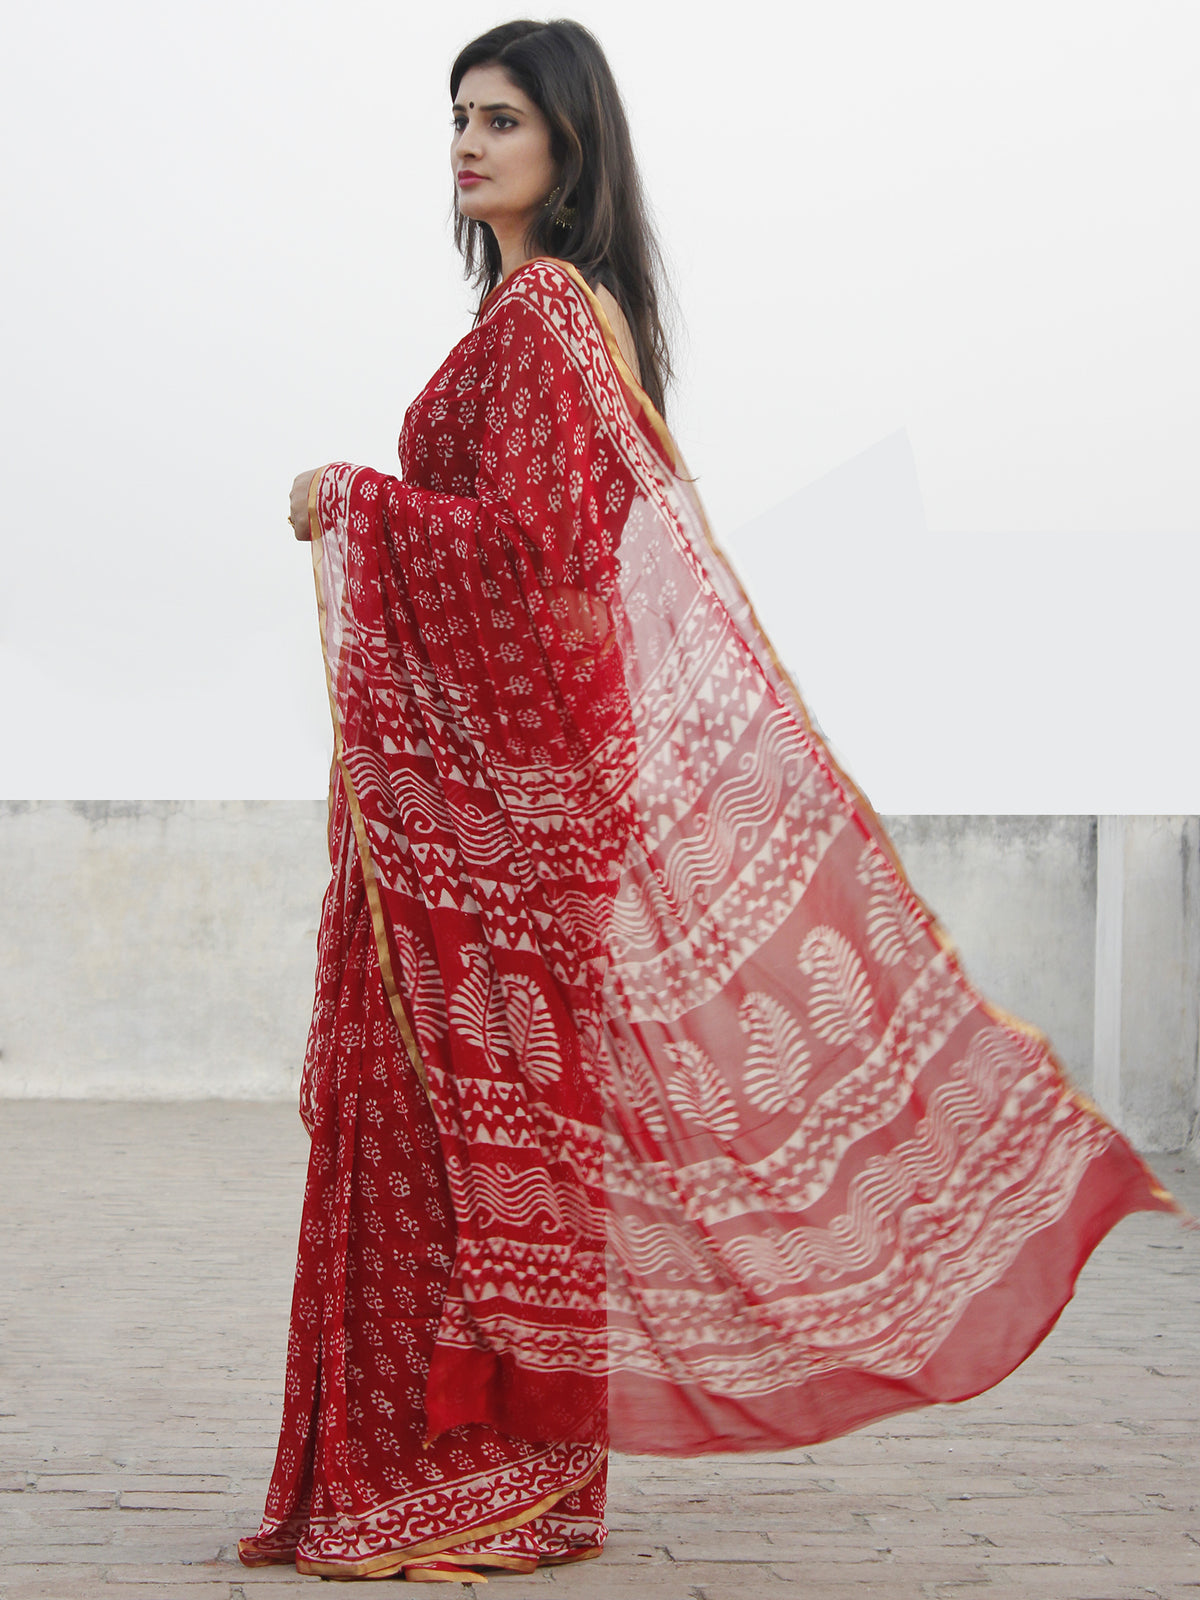 Red White Hand Block Printed Chiffon Saree With Zari Border- S031702581